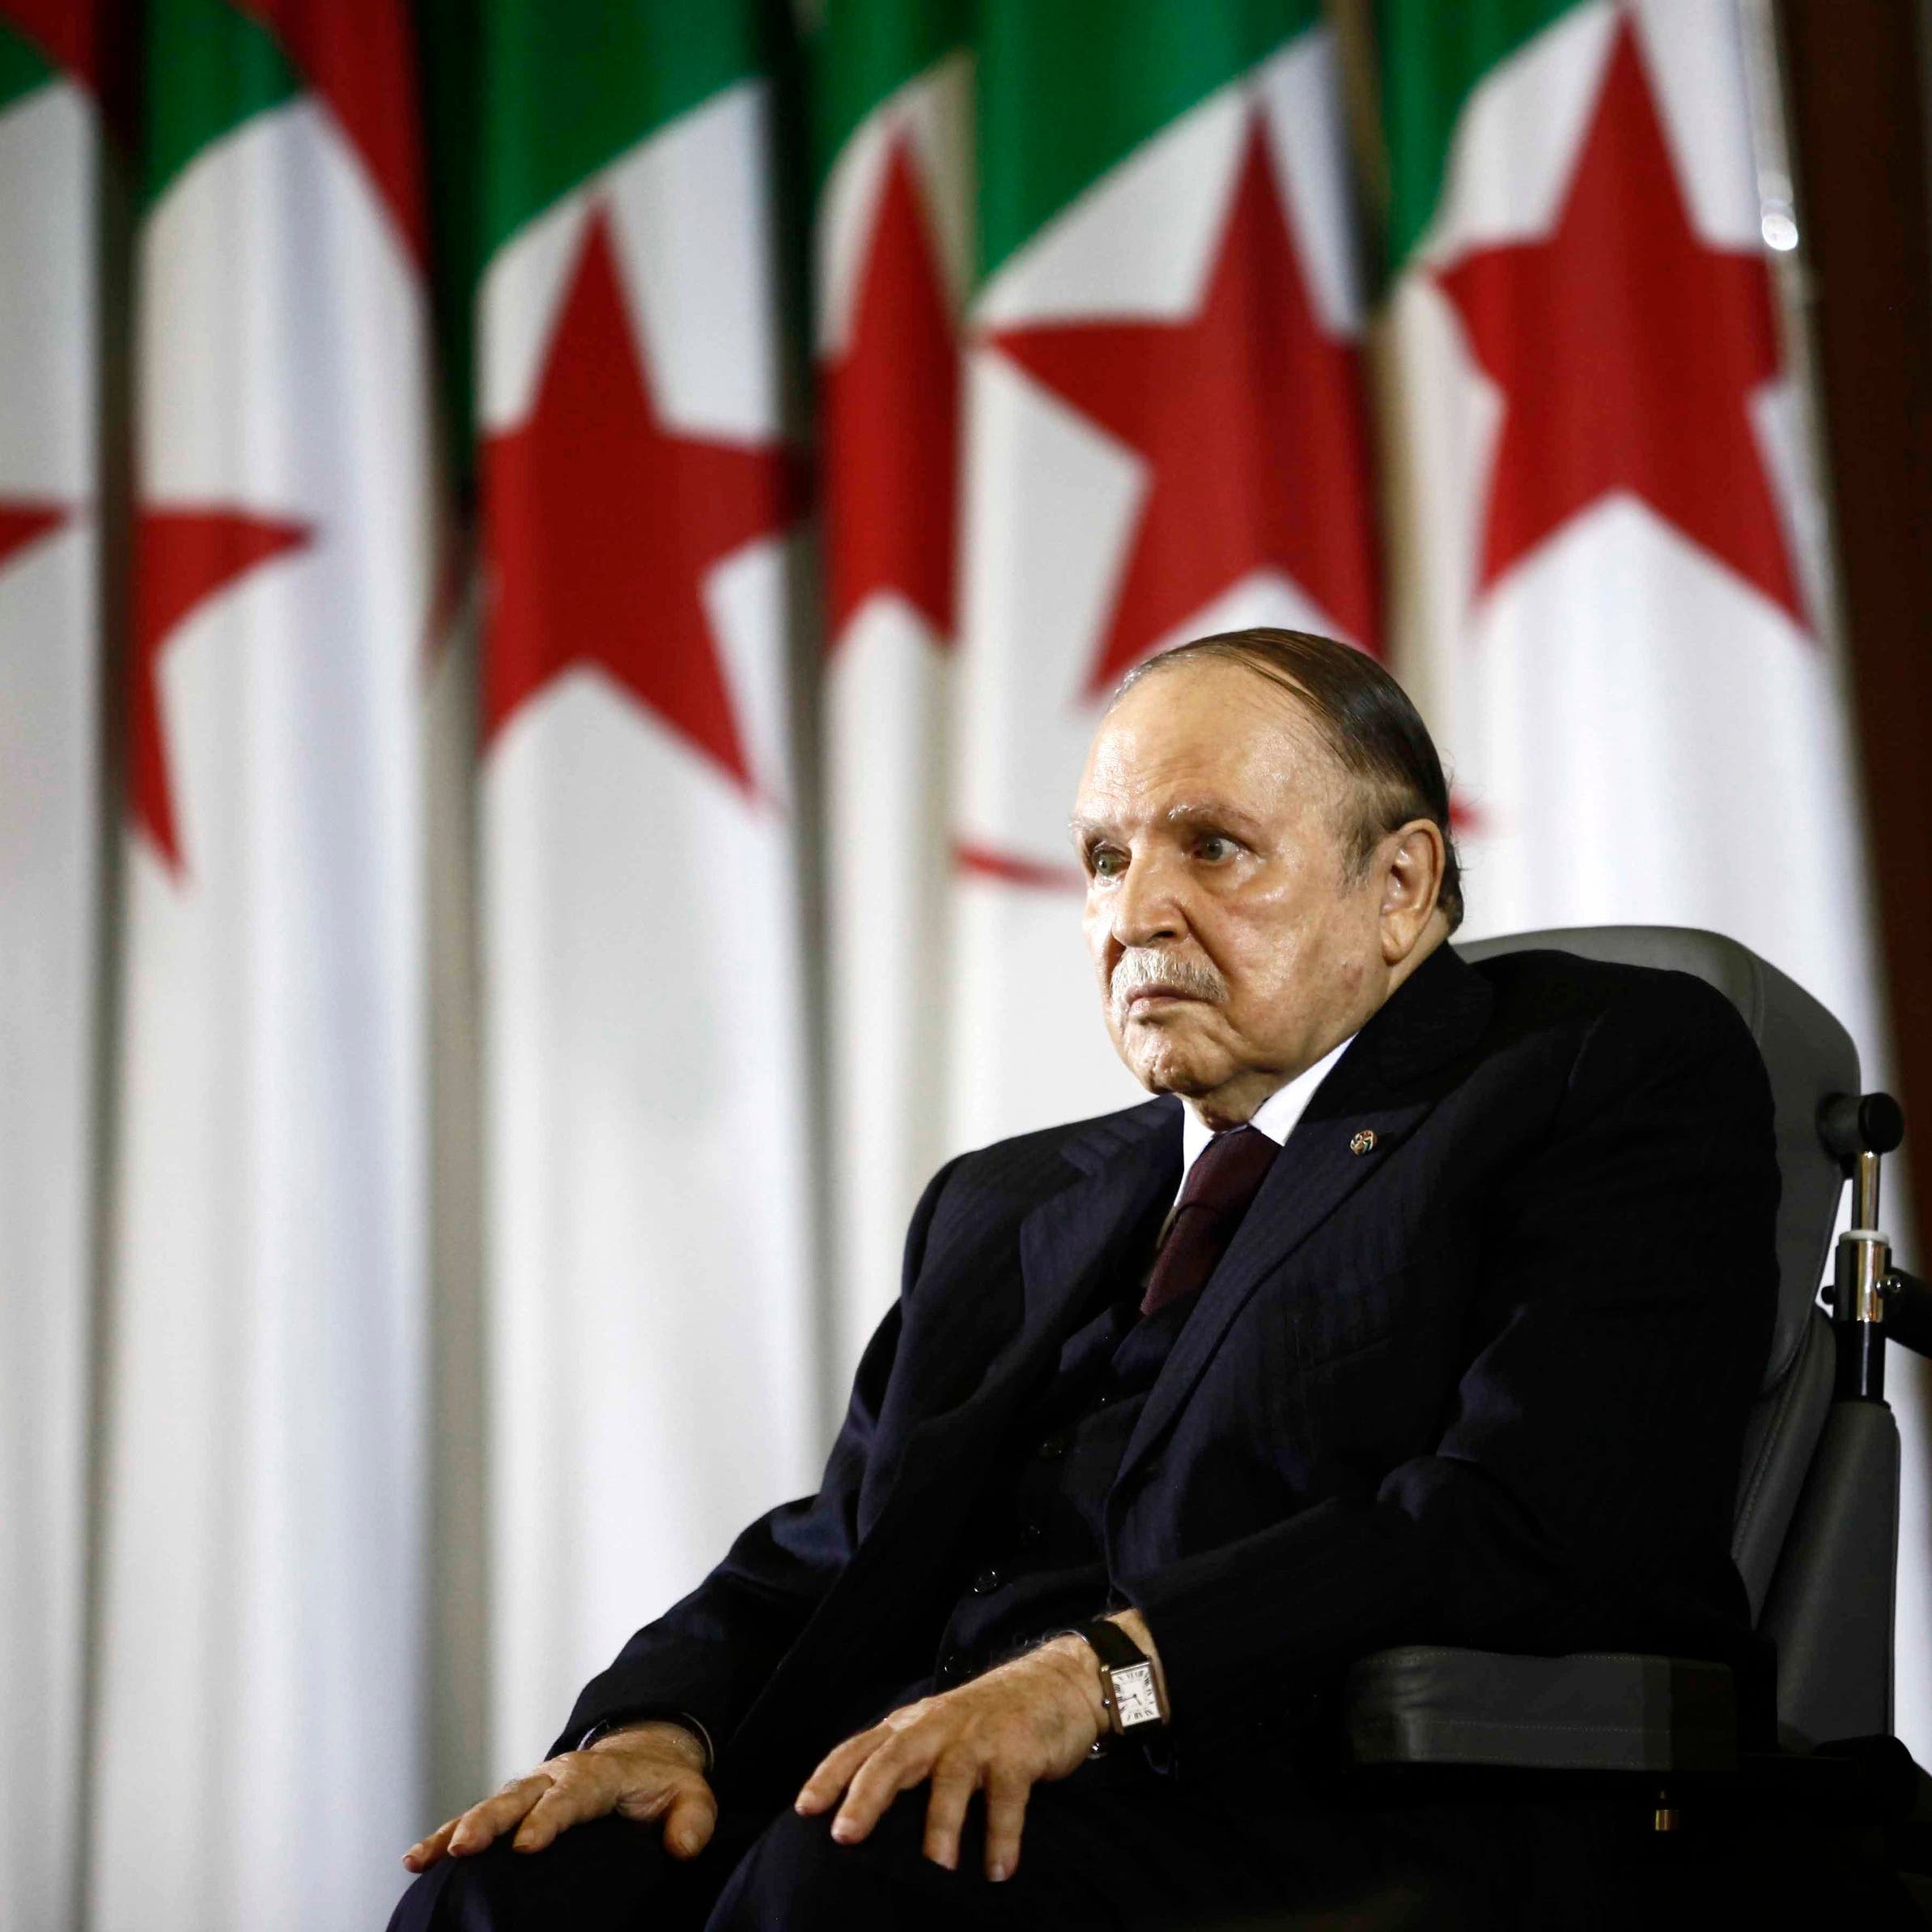  وفاة الرئيس الجزائري السابق عبد العزيز بوتفليقة